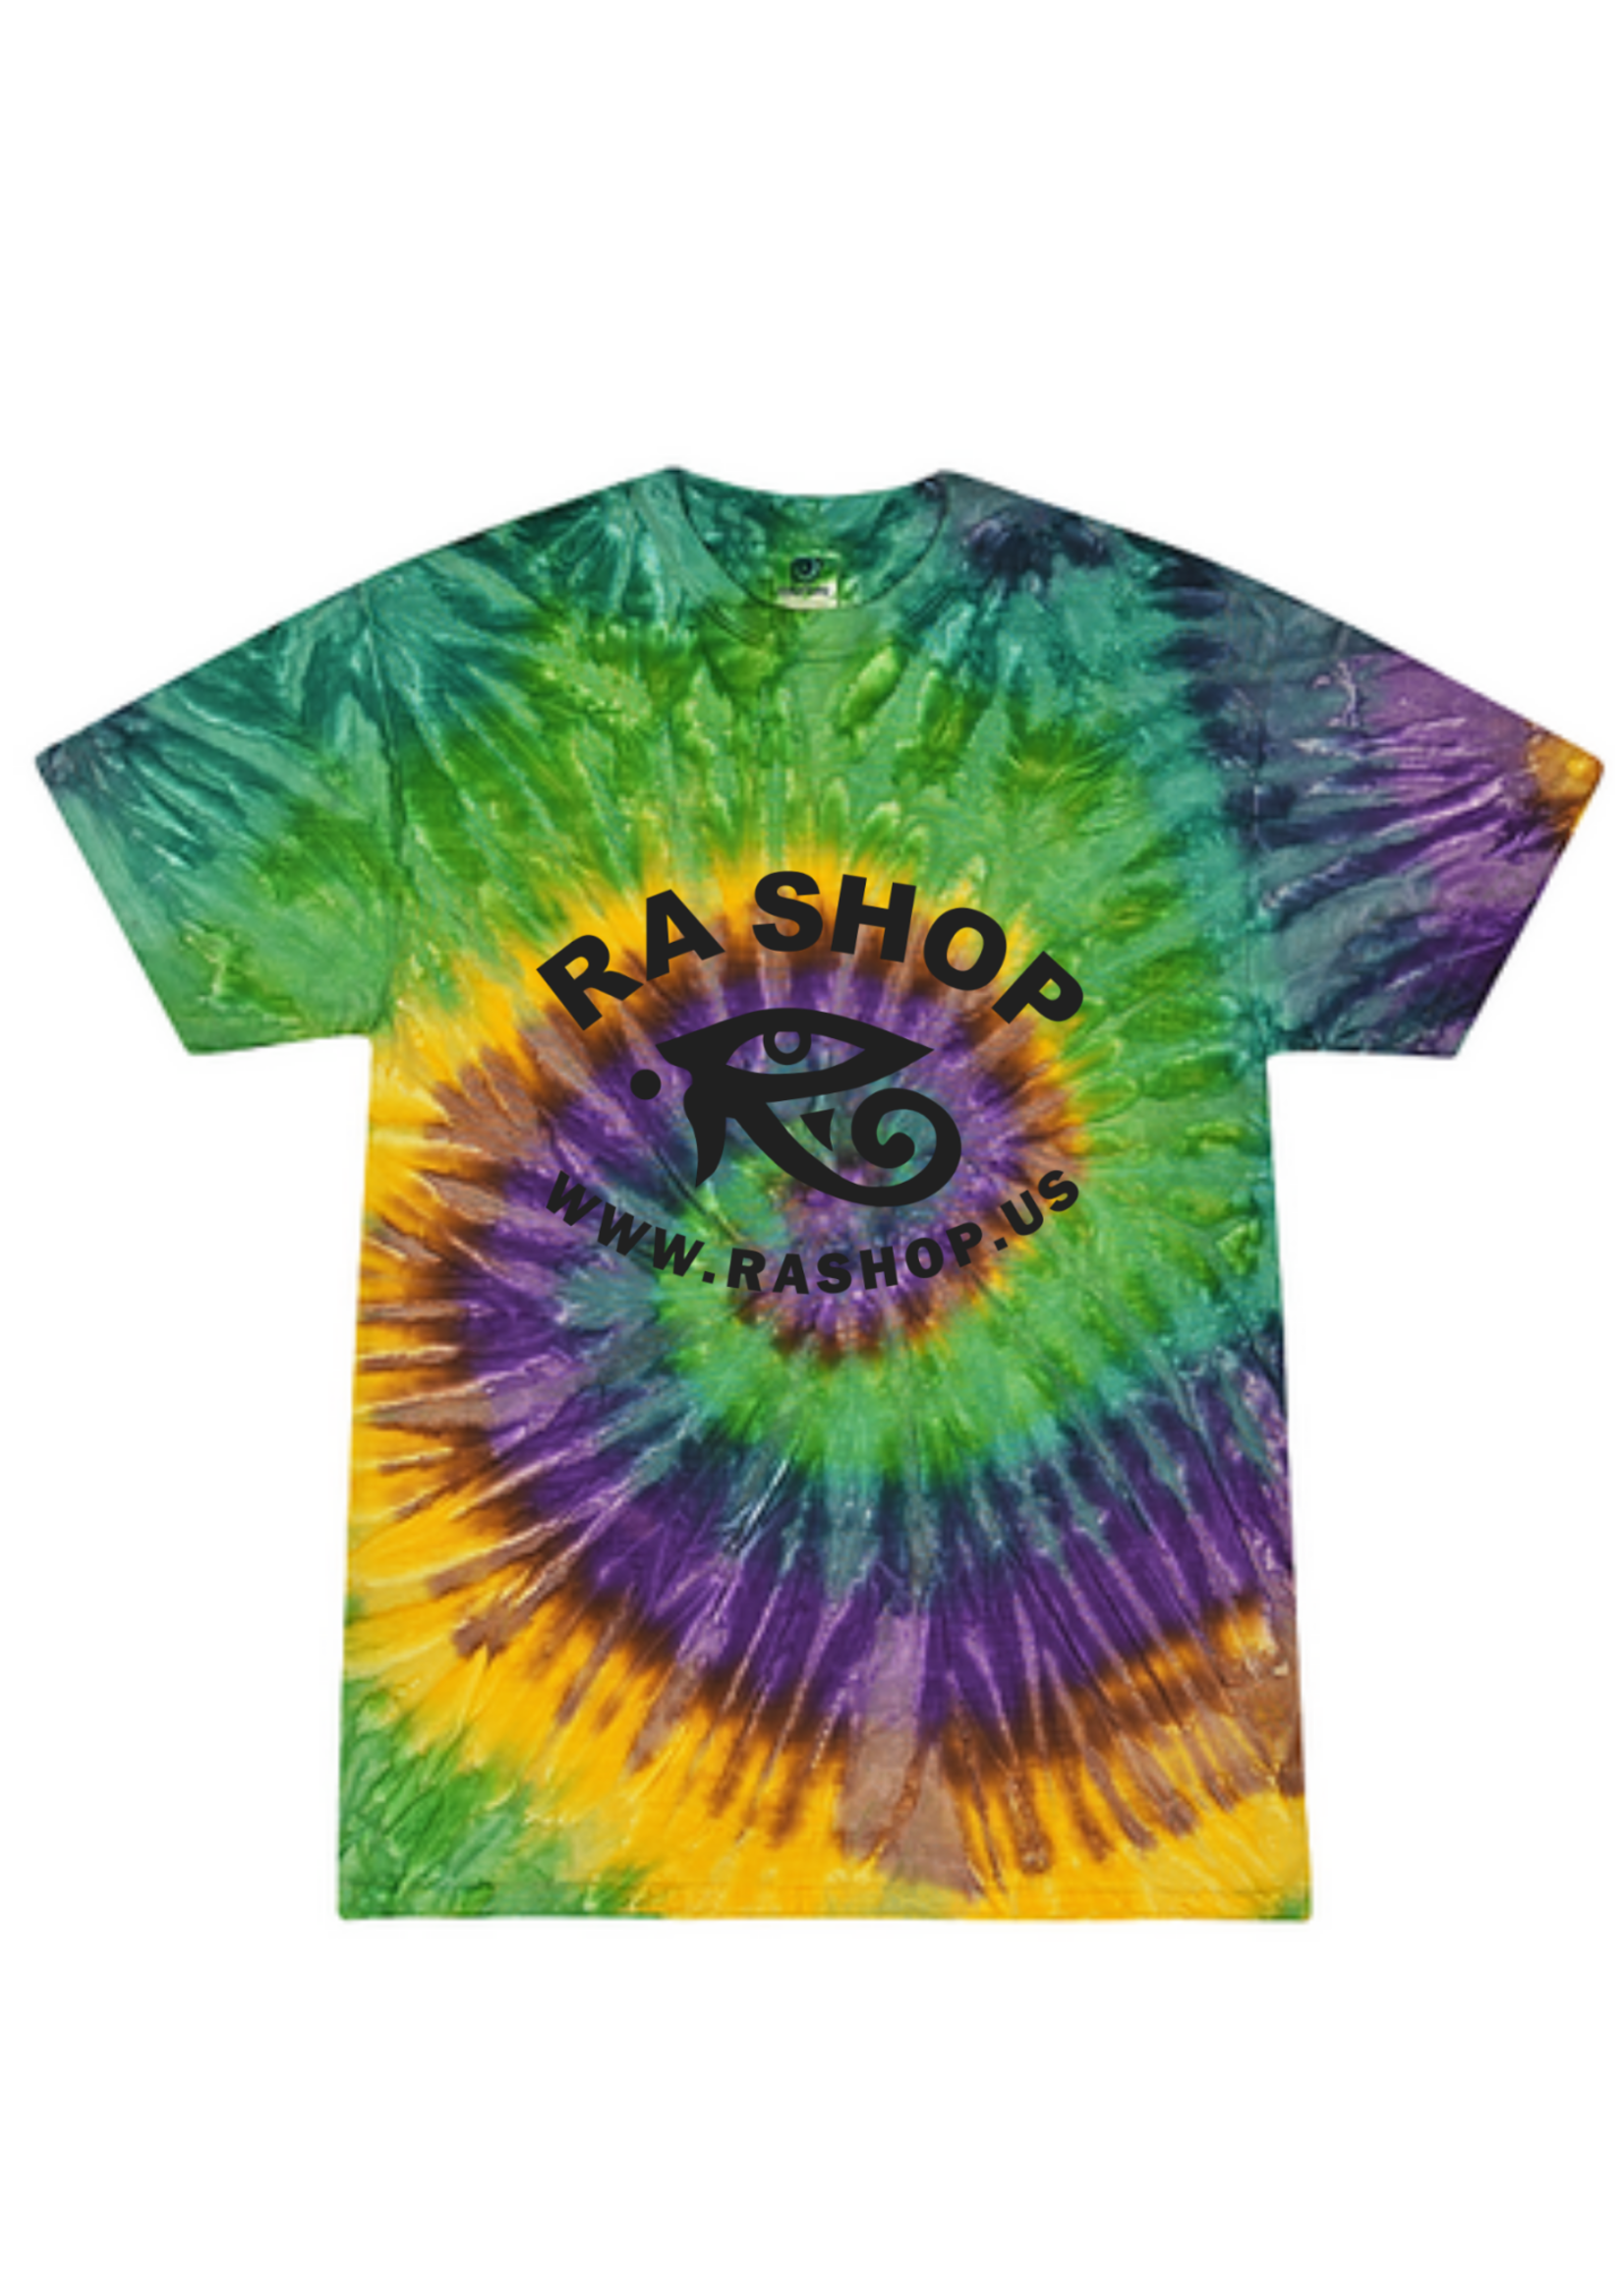 Ra Shop Tie Dye T-Shirt Mardi Gras Sm